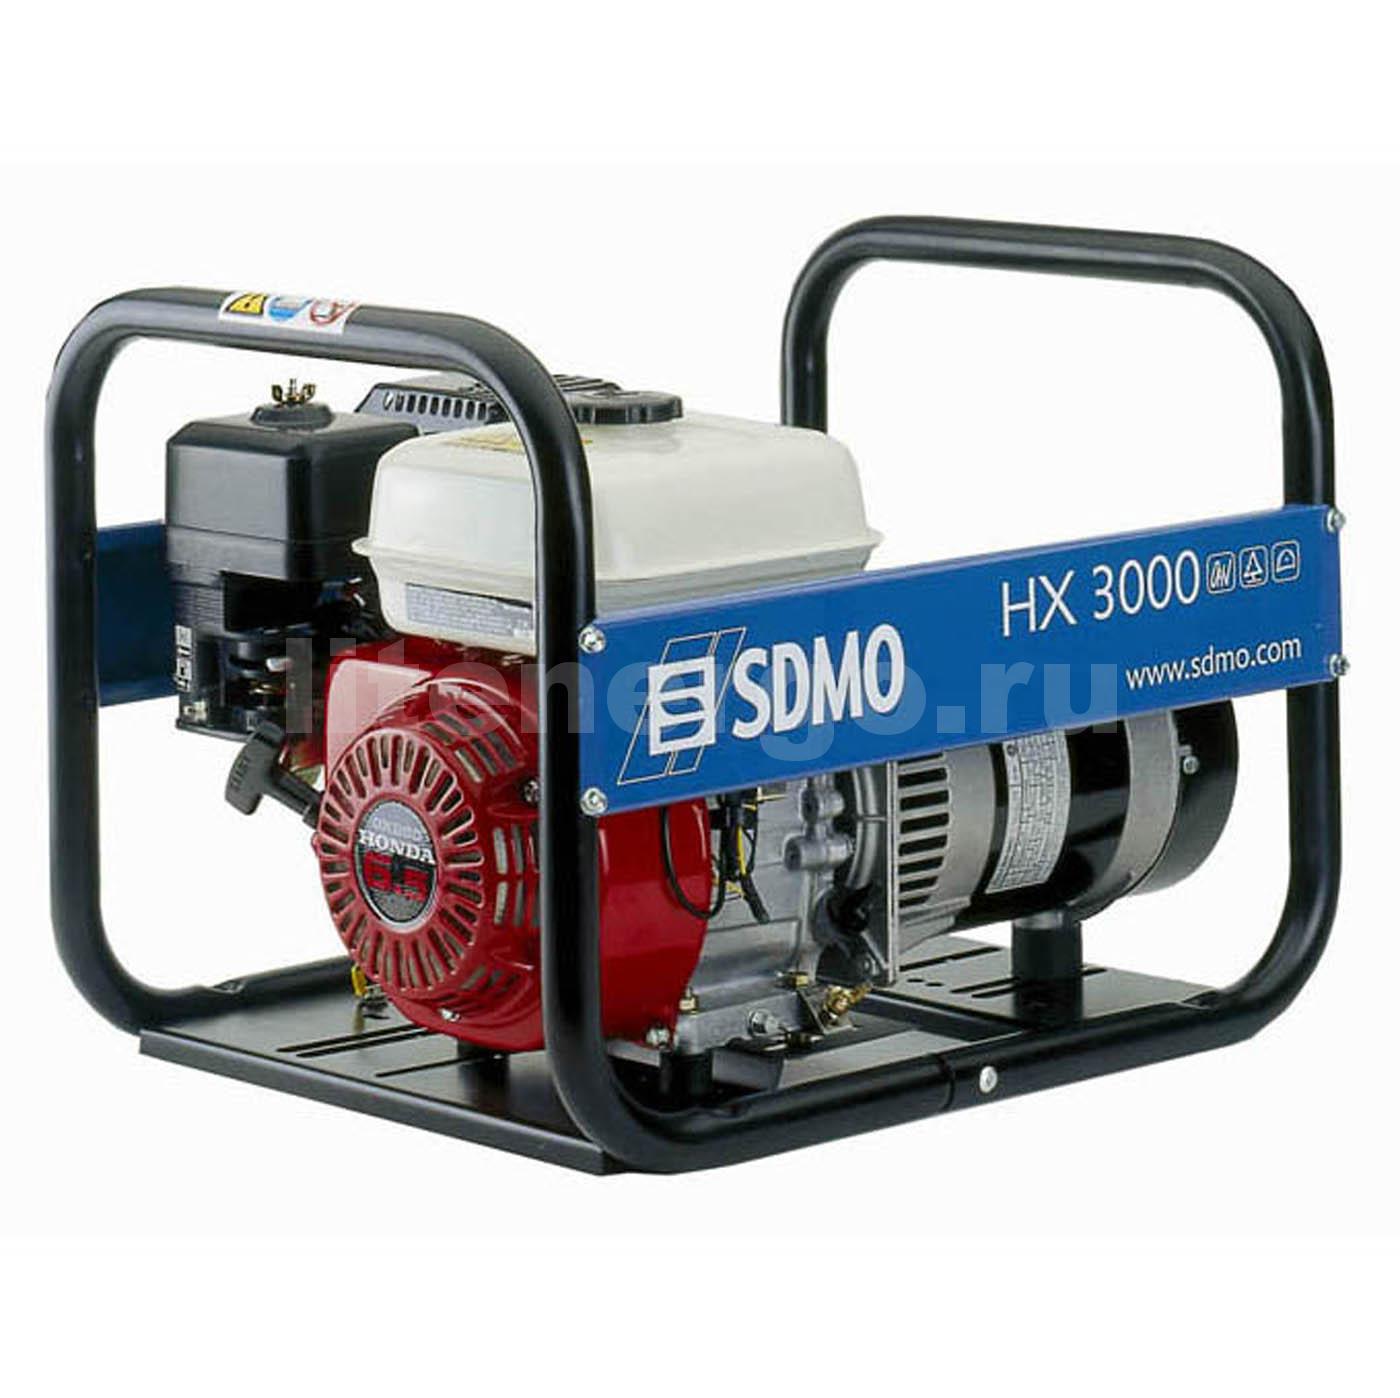 Купить бензиновый электрогенератор SDMO HX3000 в СПб по низкой цене .